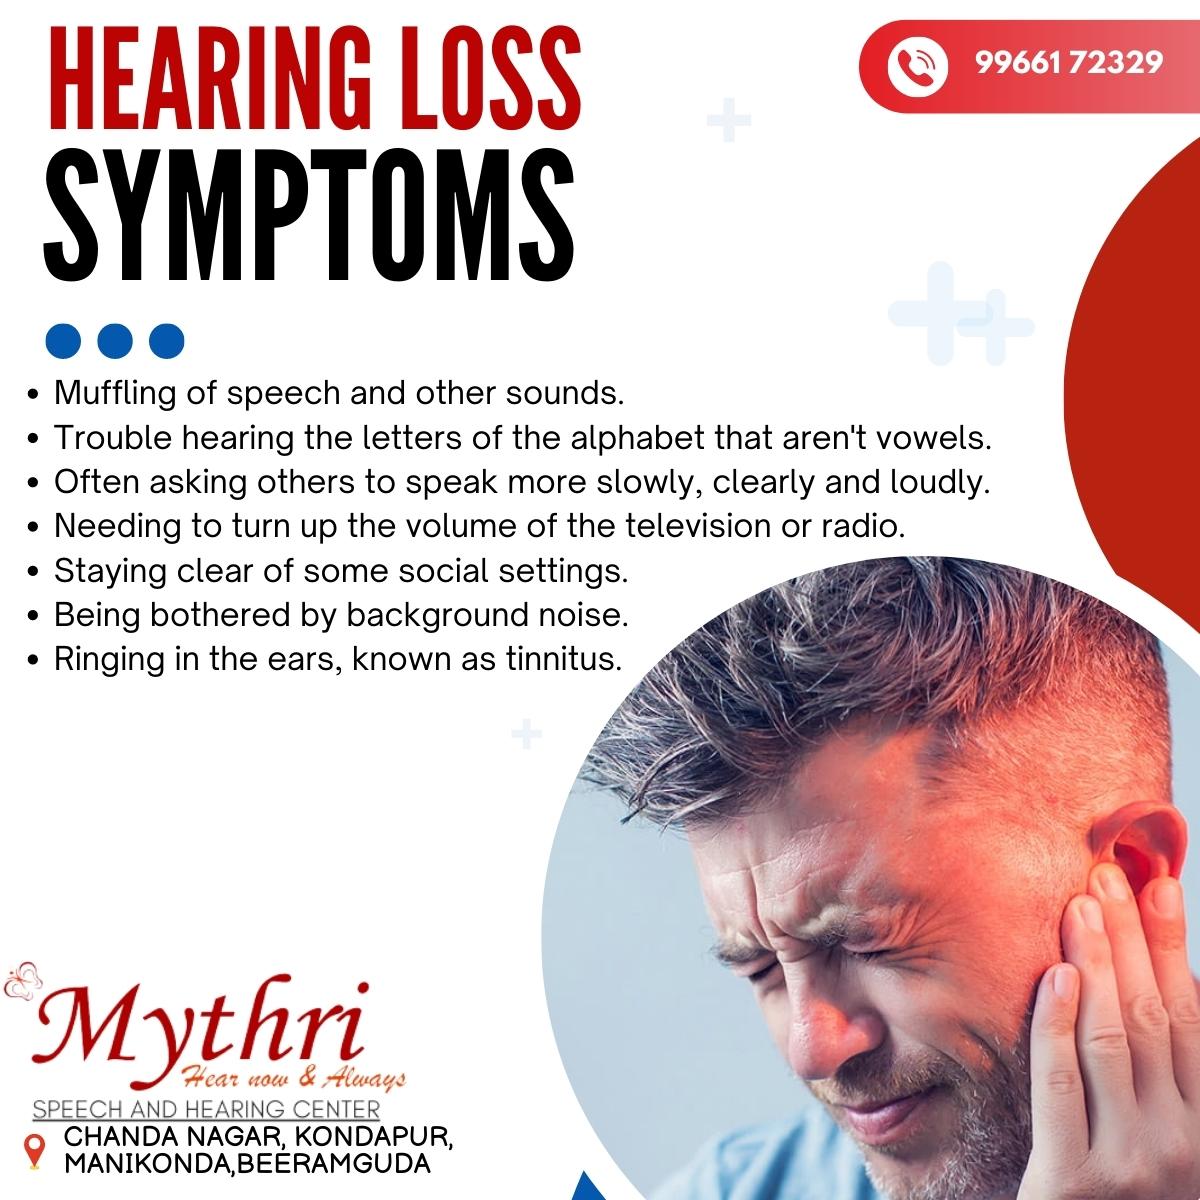 Hearing Loss Solutions | Hearing Loss Treatments | Hearing Loss Treatment Specialist | Hearing Loss Specialists | Best Hearing Loss Solutions, Hyderabad, Telangana, India